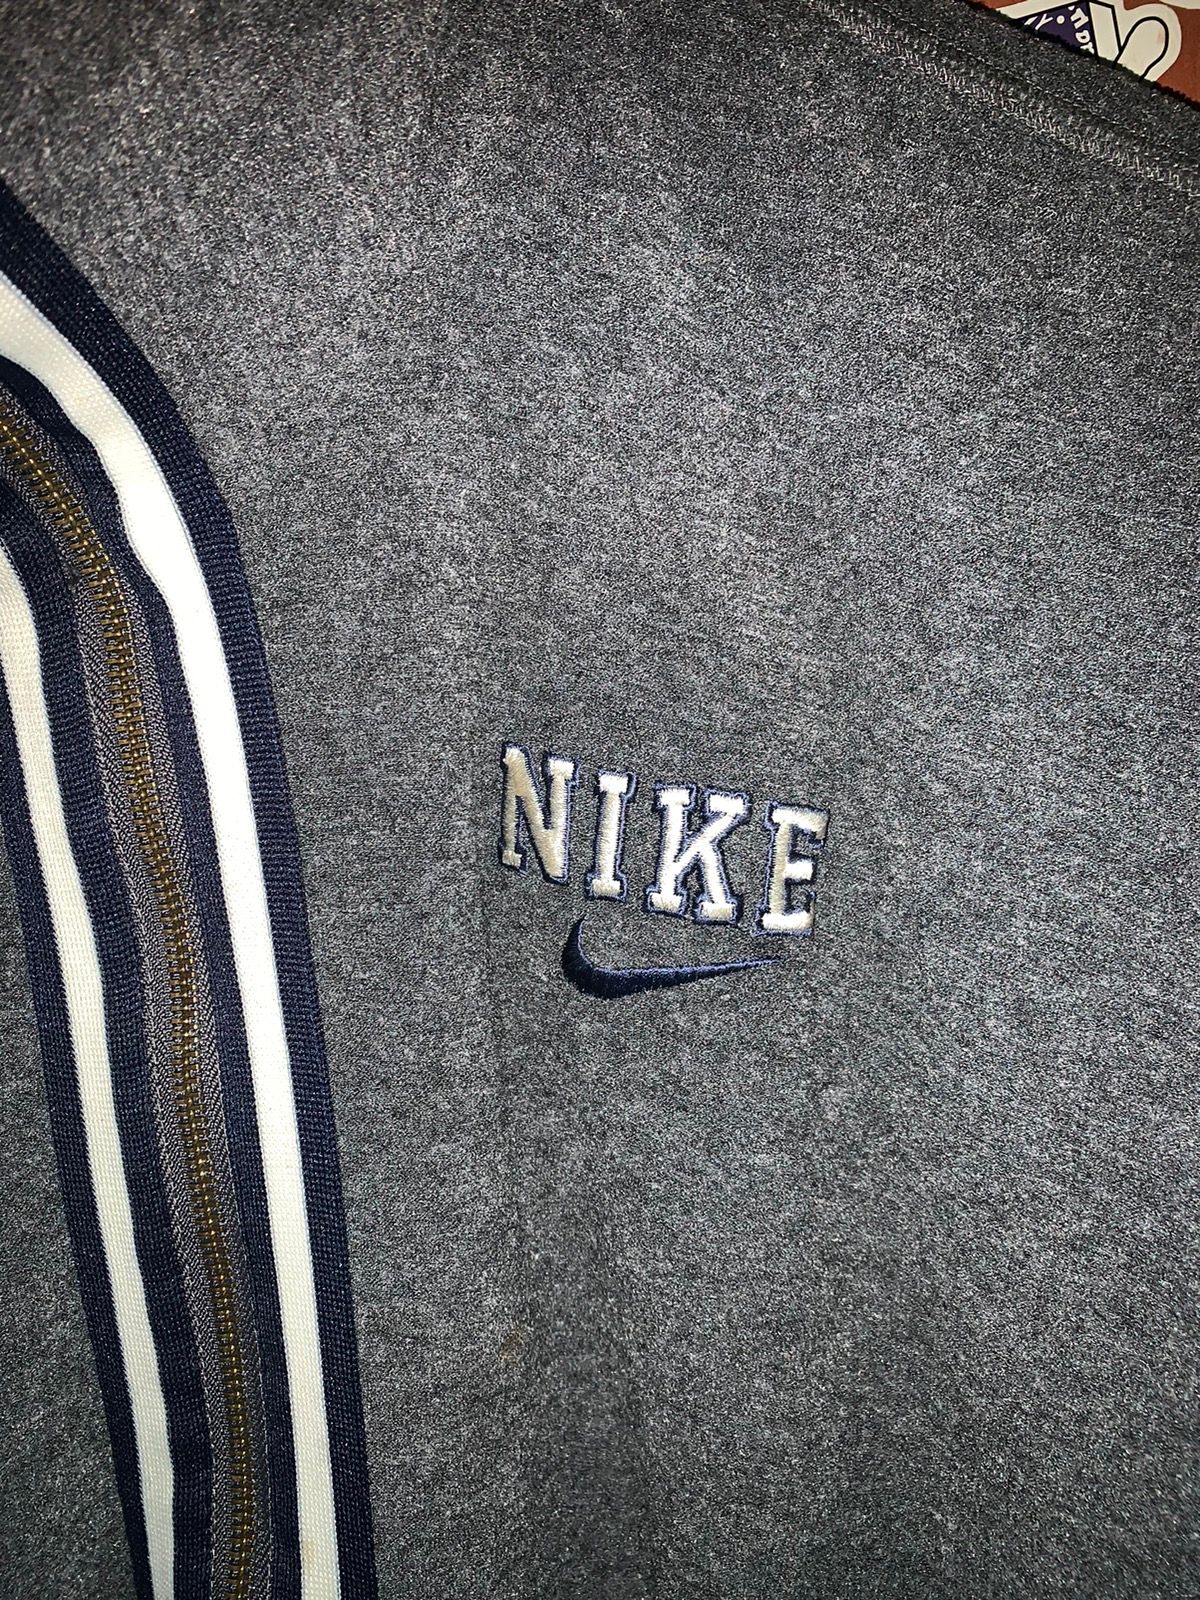 Vintage Nike fleece jacket Baggy styles 90’s - 2